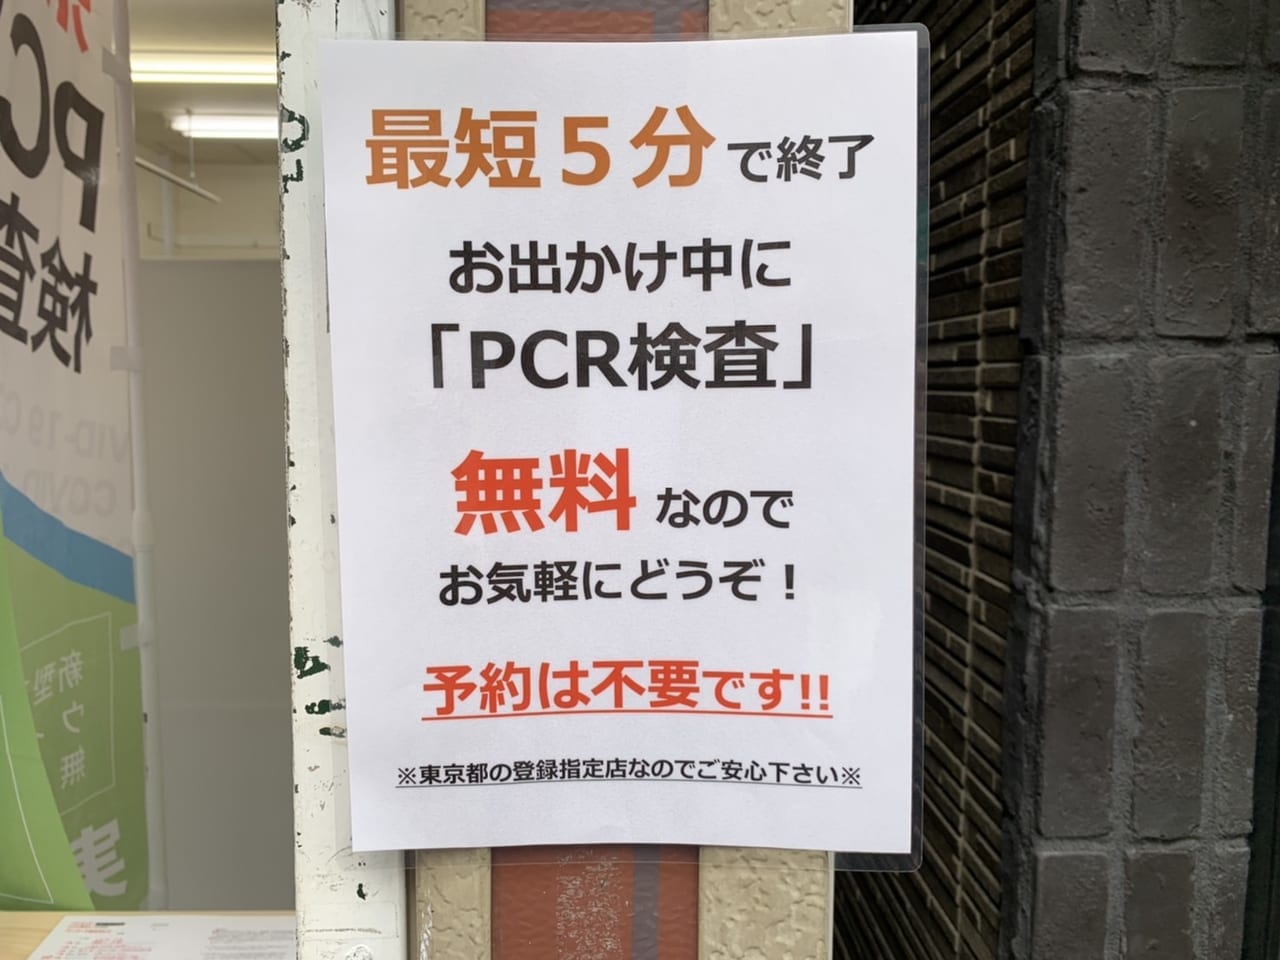 PCR検査所